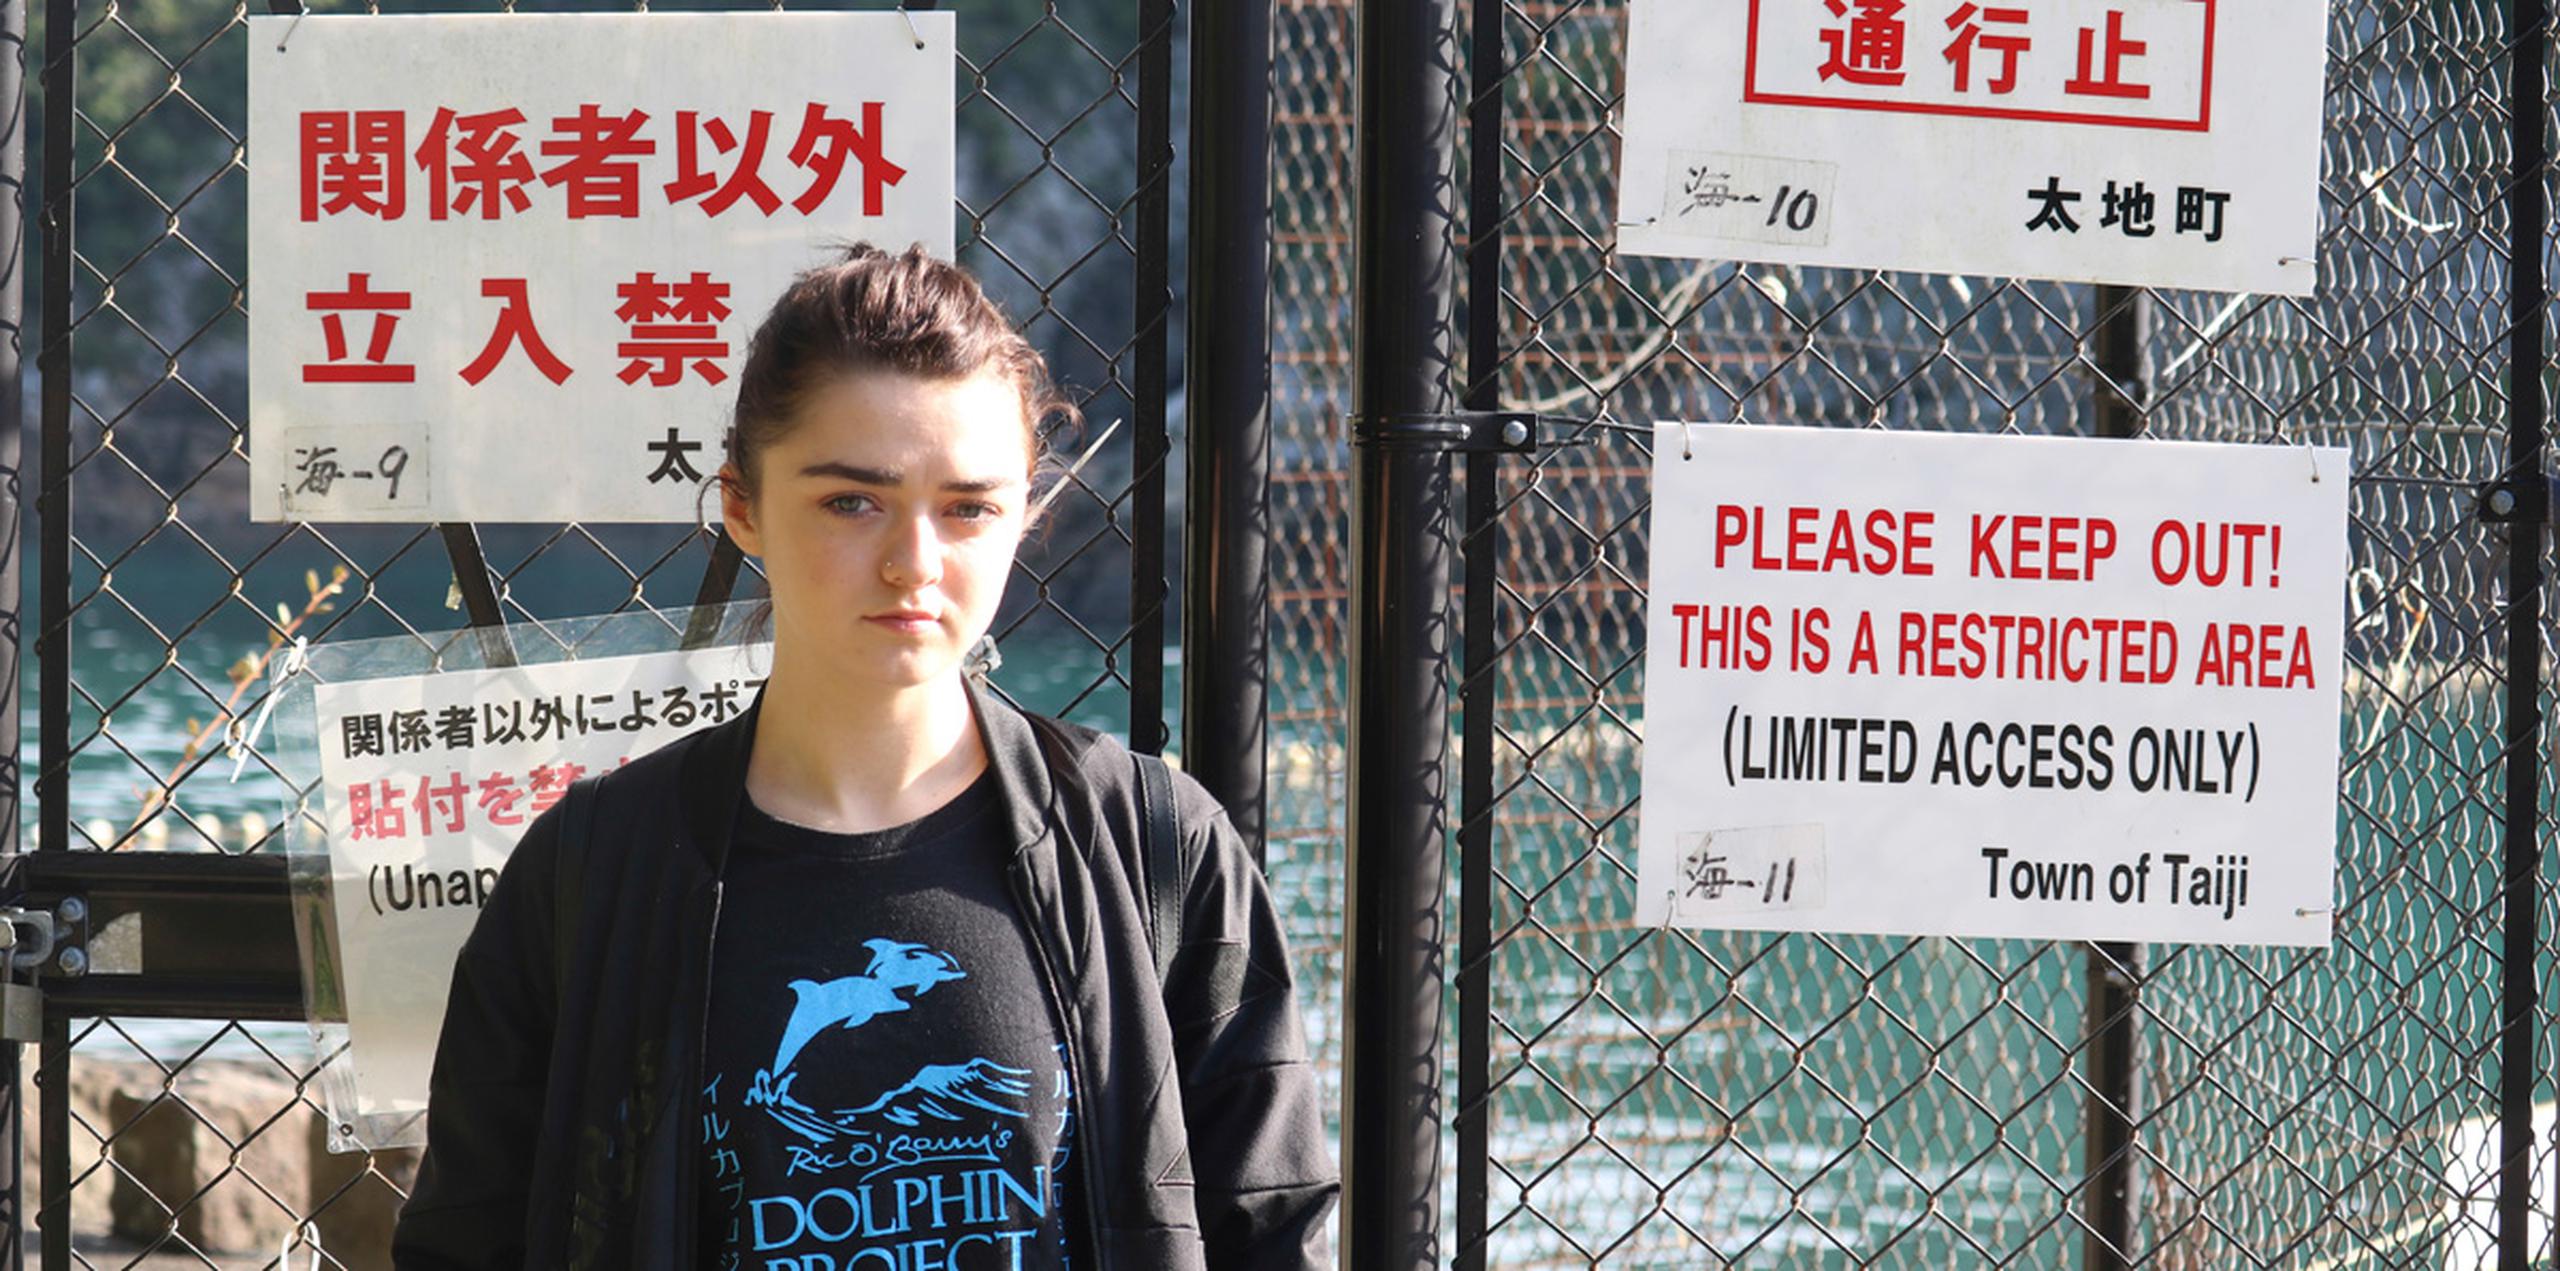 Williams habló el viernes en la pequeña localidad japonesa de Taiji, que se hizo famosa por la oscarizada película de 2009 "The Cove", que documentó la caza de delfines y estaba protagonizada por Ric O'Barry, el entrenador de delfines de la serie de televisión "Flipper". (AP)